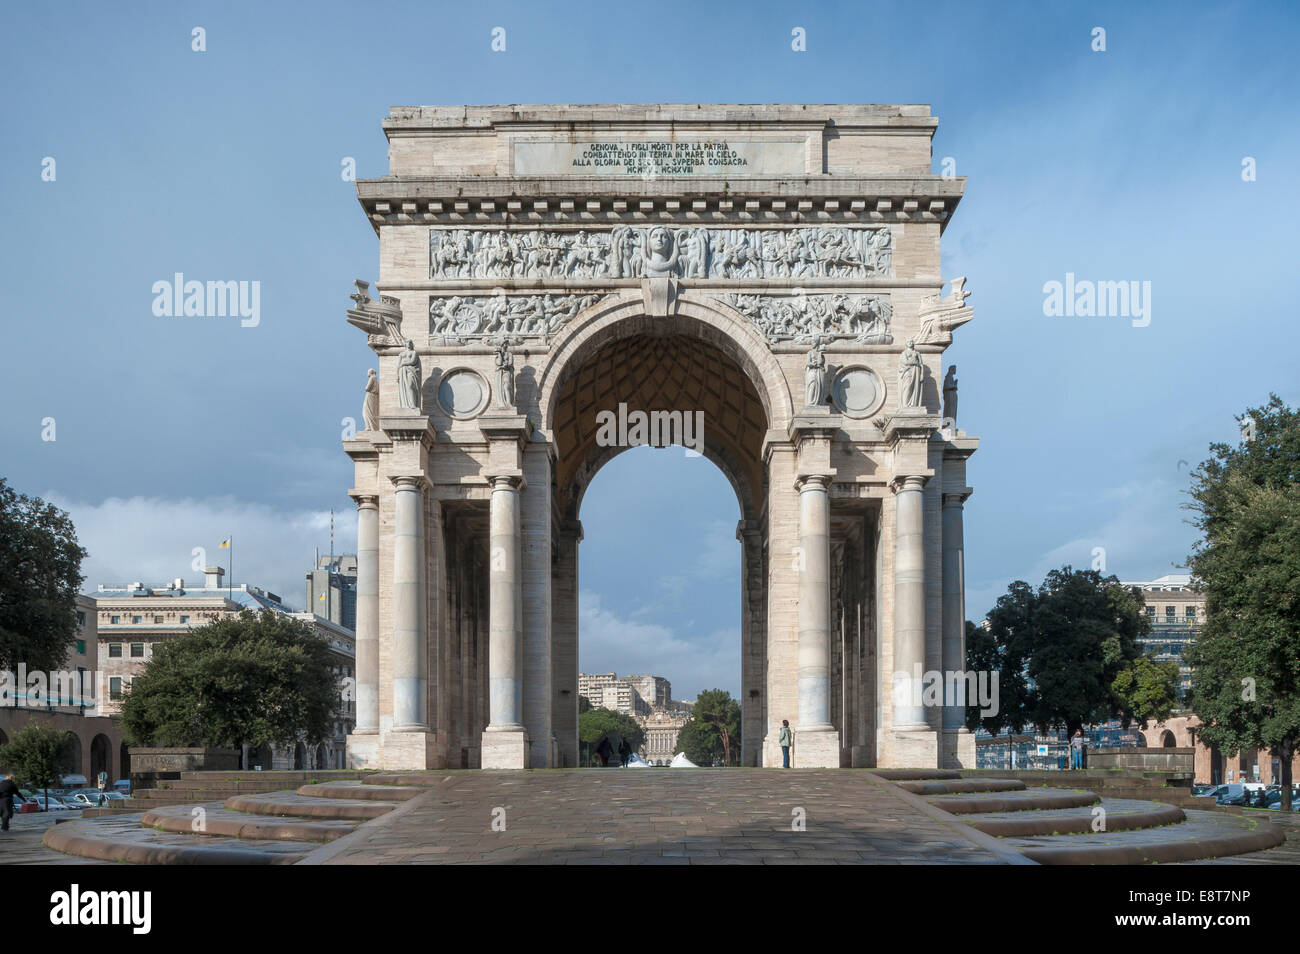 Triumphal Arch Arco della Vittoria, architecture of Italian fascism under Mussolini, Piazza della Vittoria, Genoa, Liguria Stock Photo